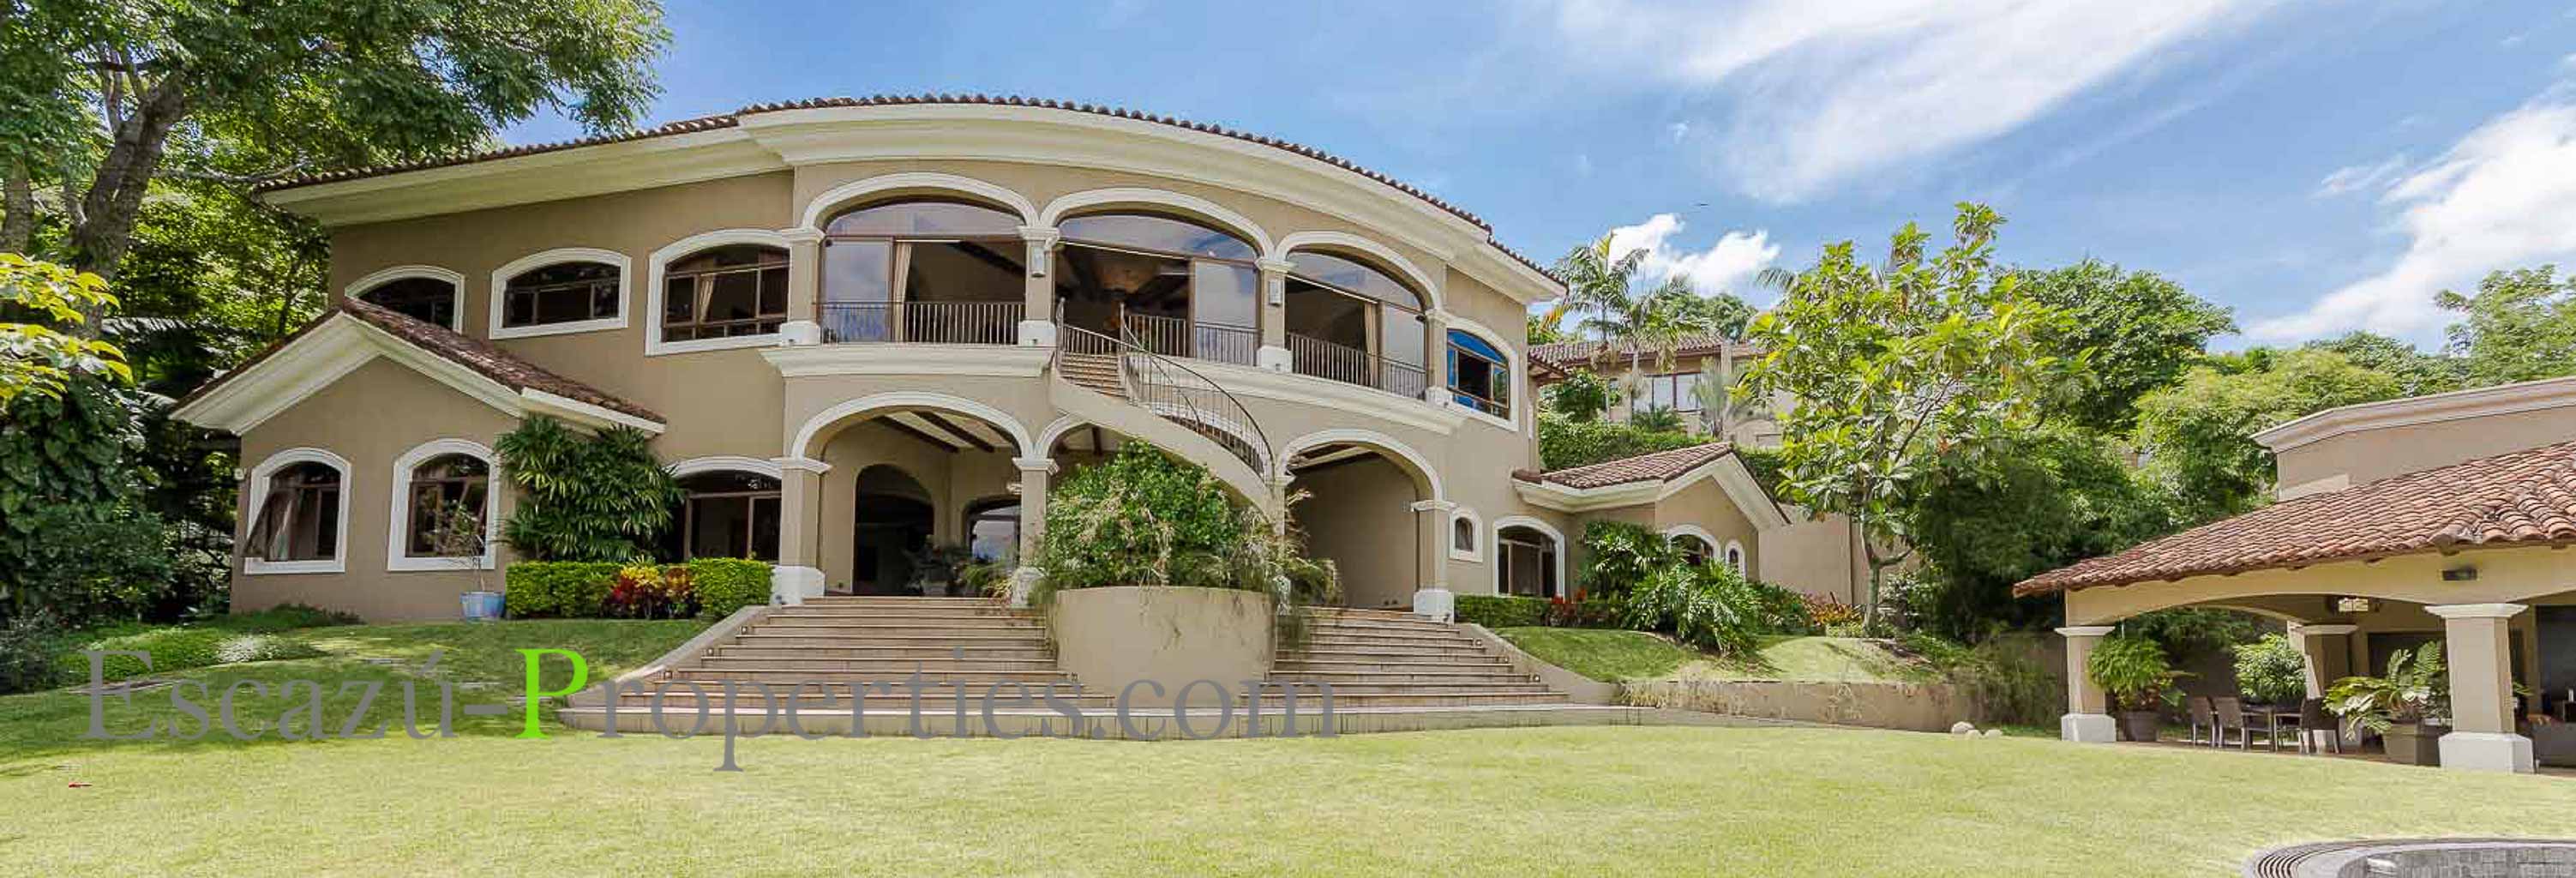 Villa Real Santa Ana | Costa Rica | Casas en venta en Villa Real.